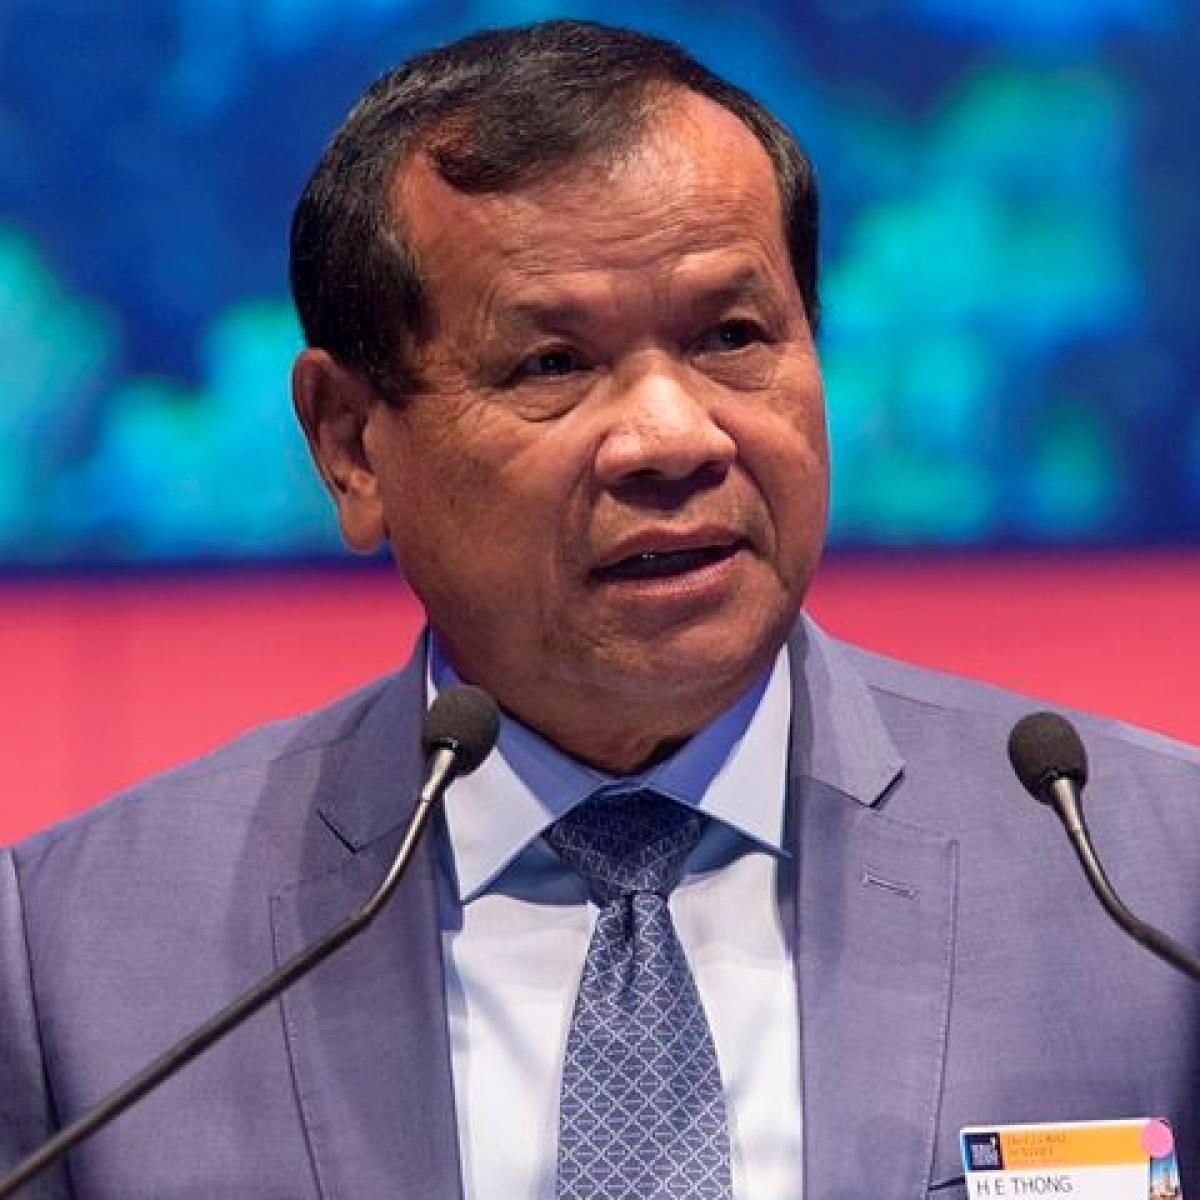 Campuchia cảnh báo doanh nghiệp du lịch trước hoạt động cờ bạc bất hợp pháp - 1